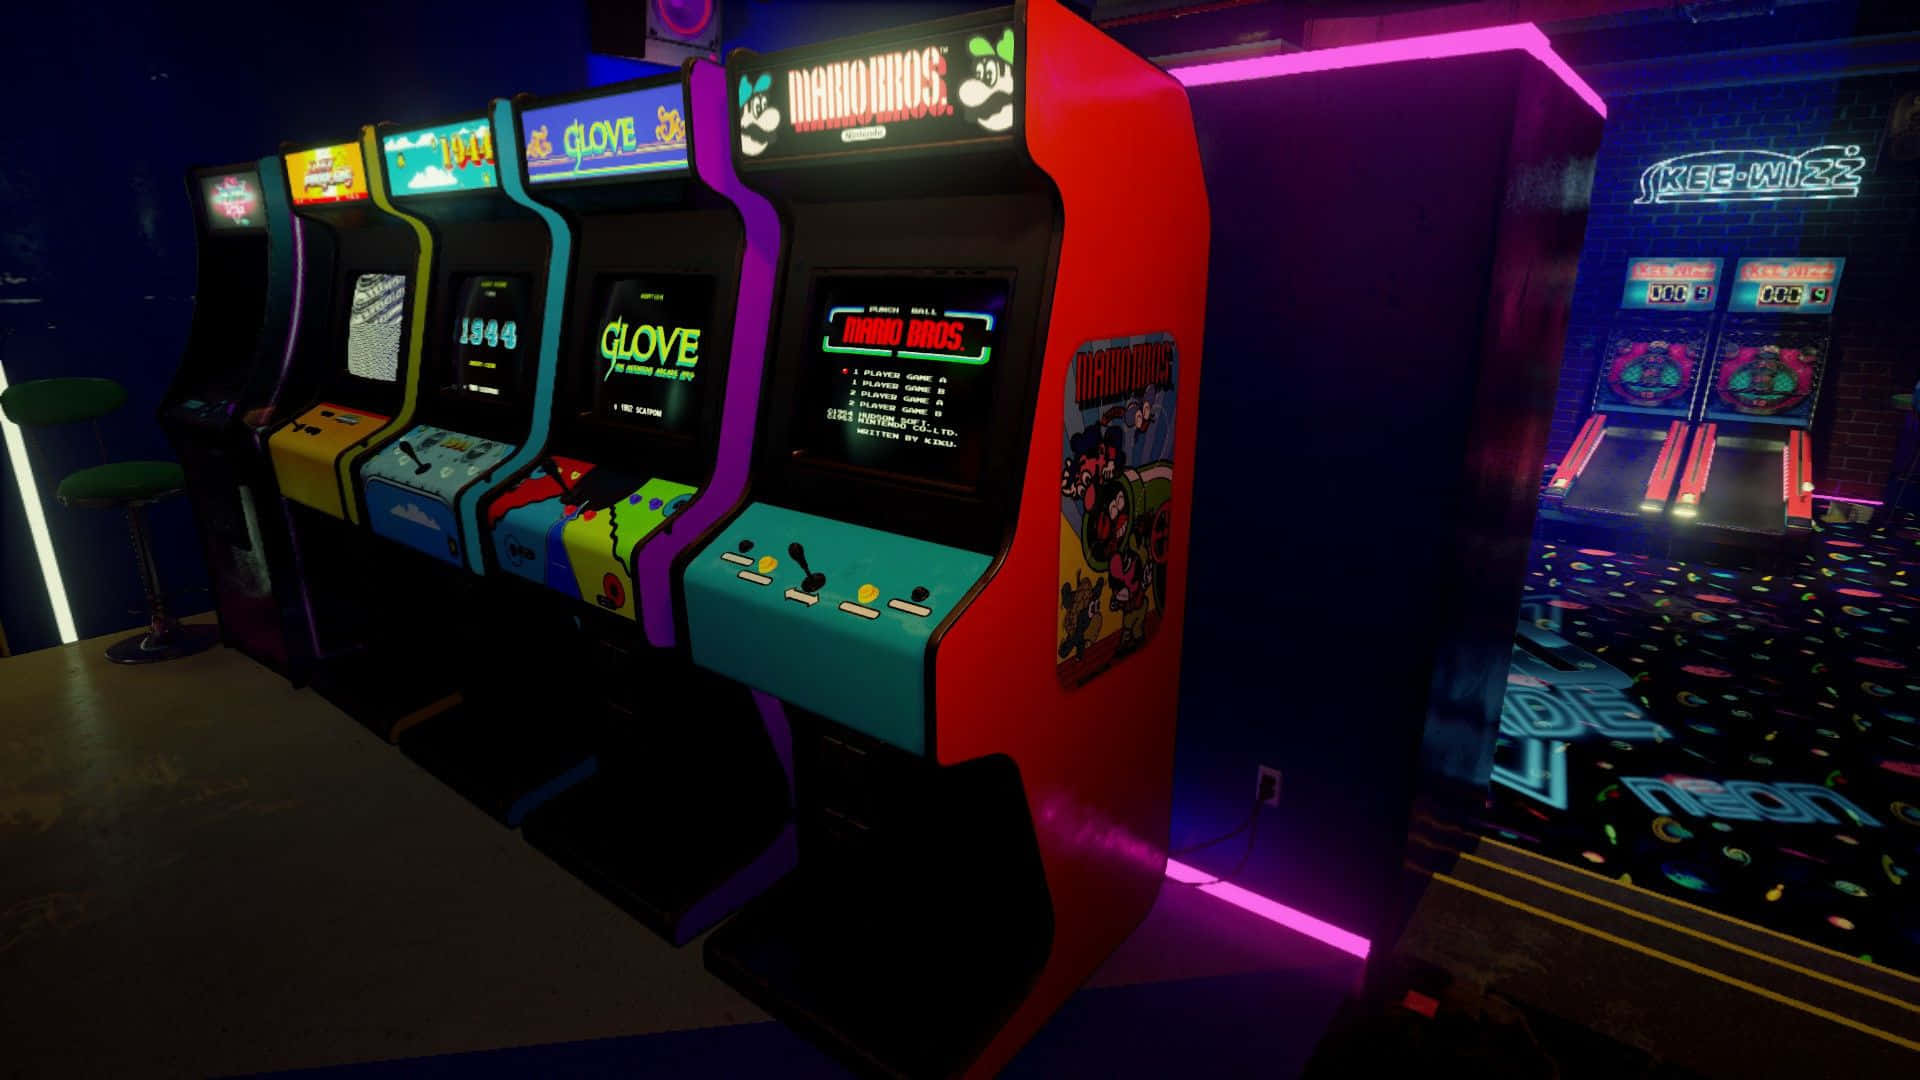 Arcade Machines In A Dark Room